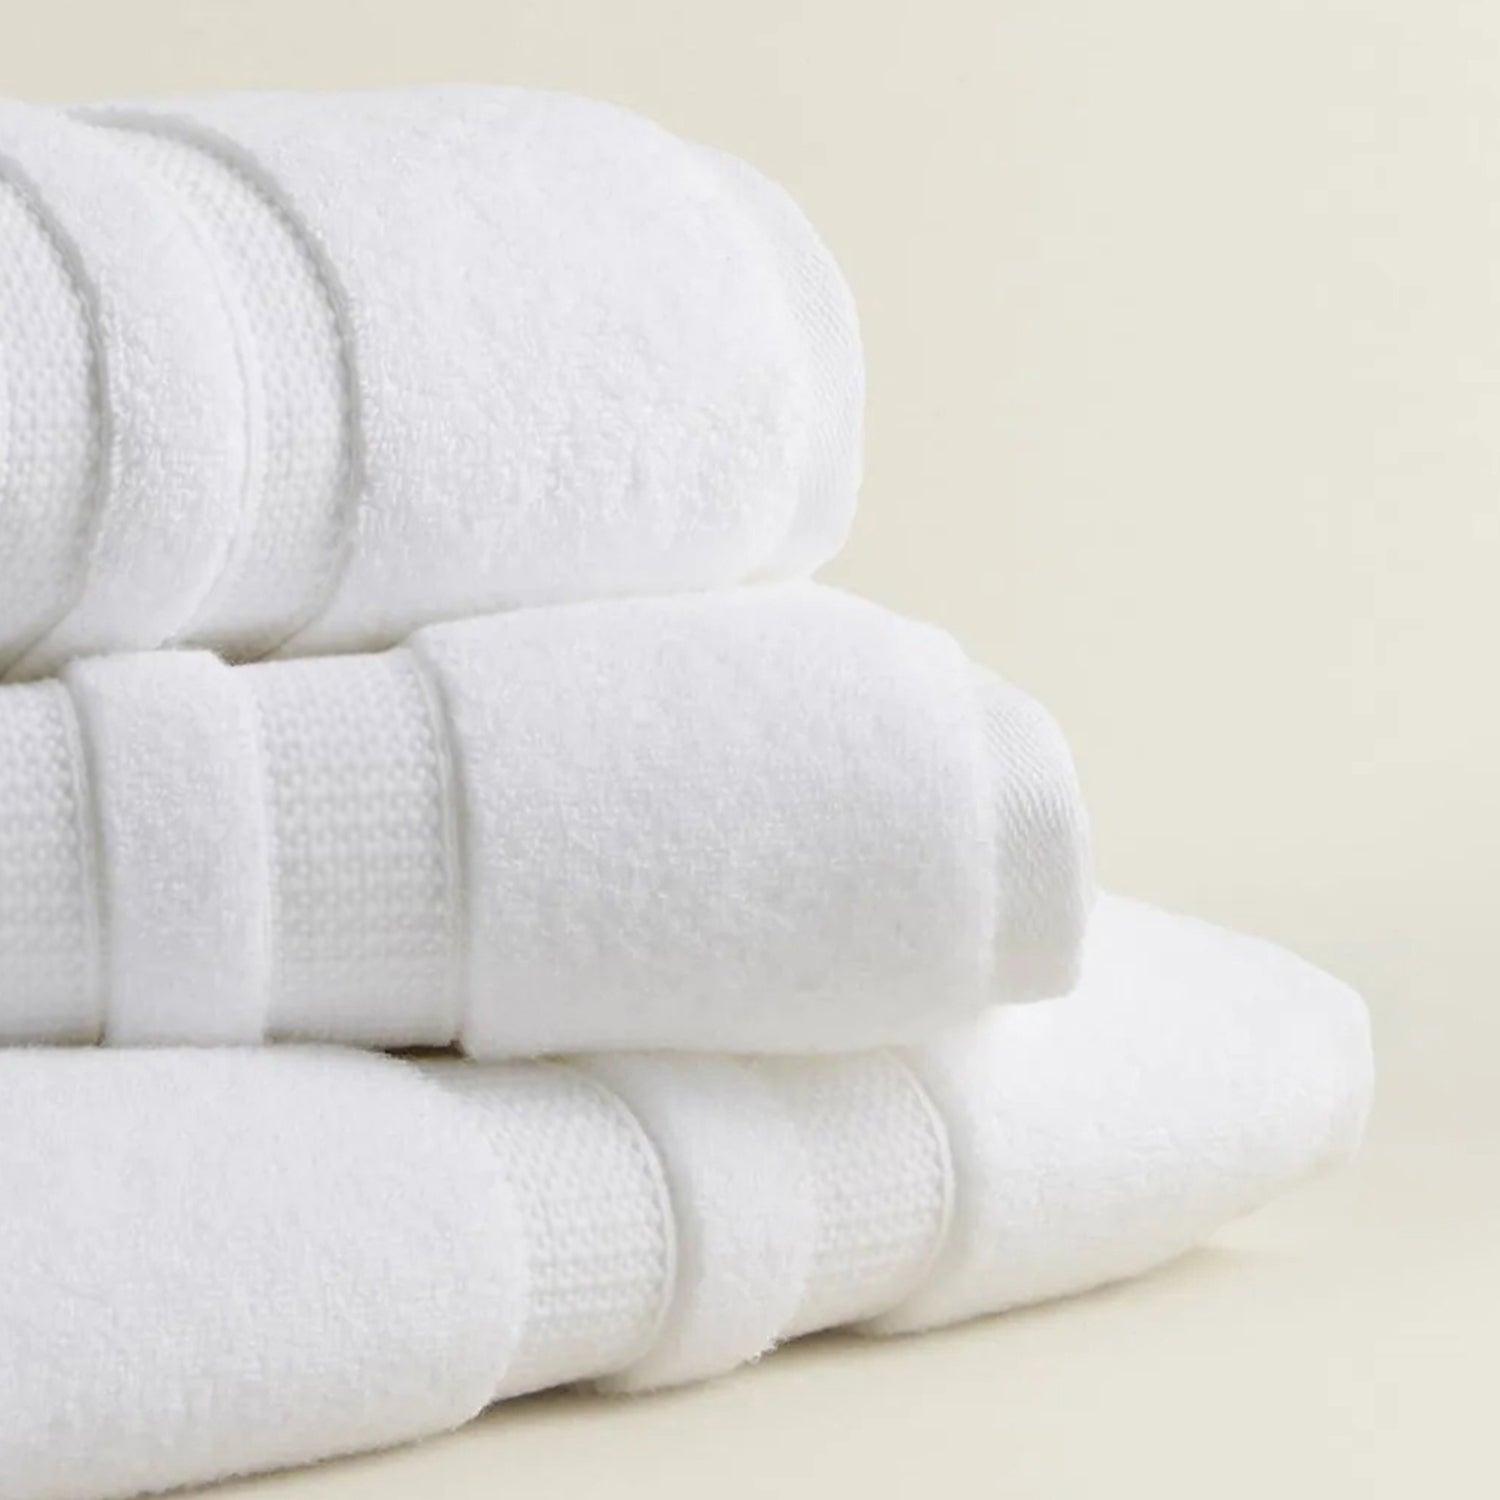 Cotton/Towel